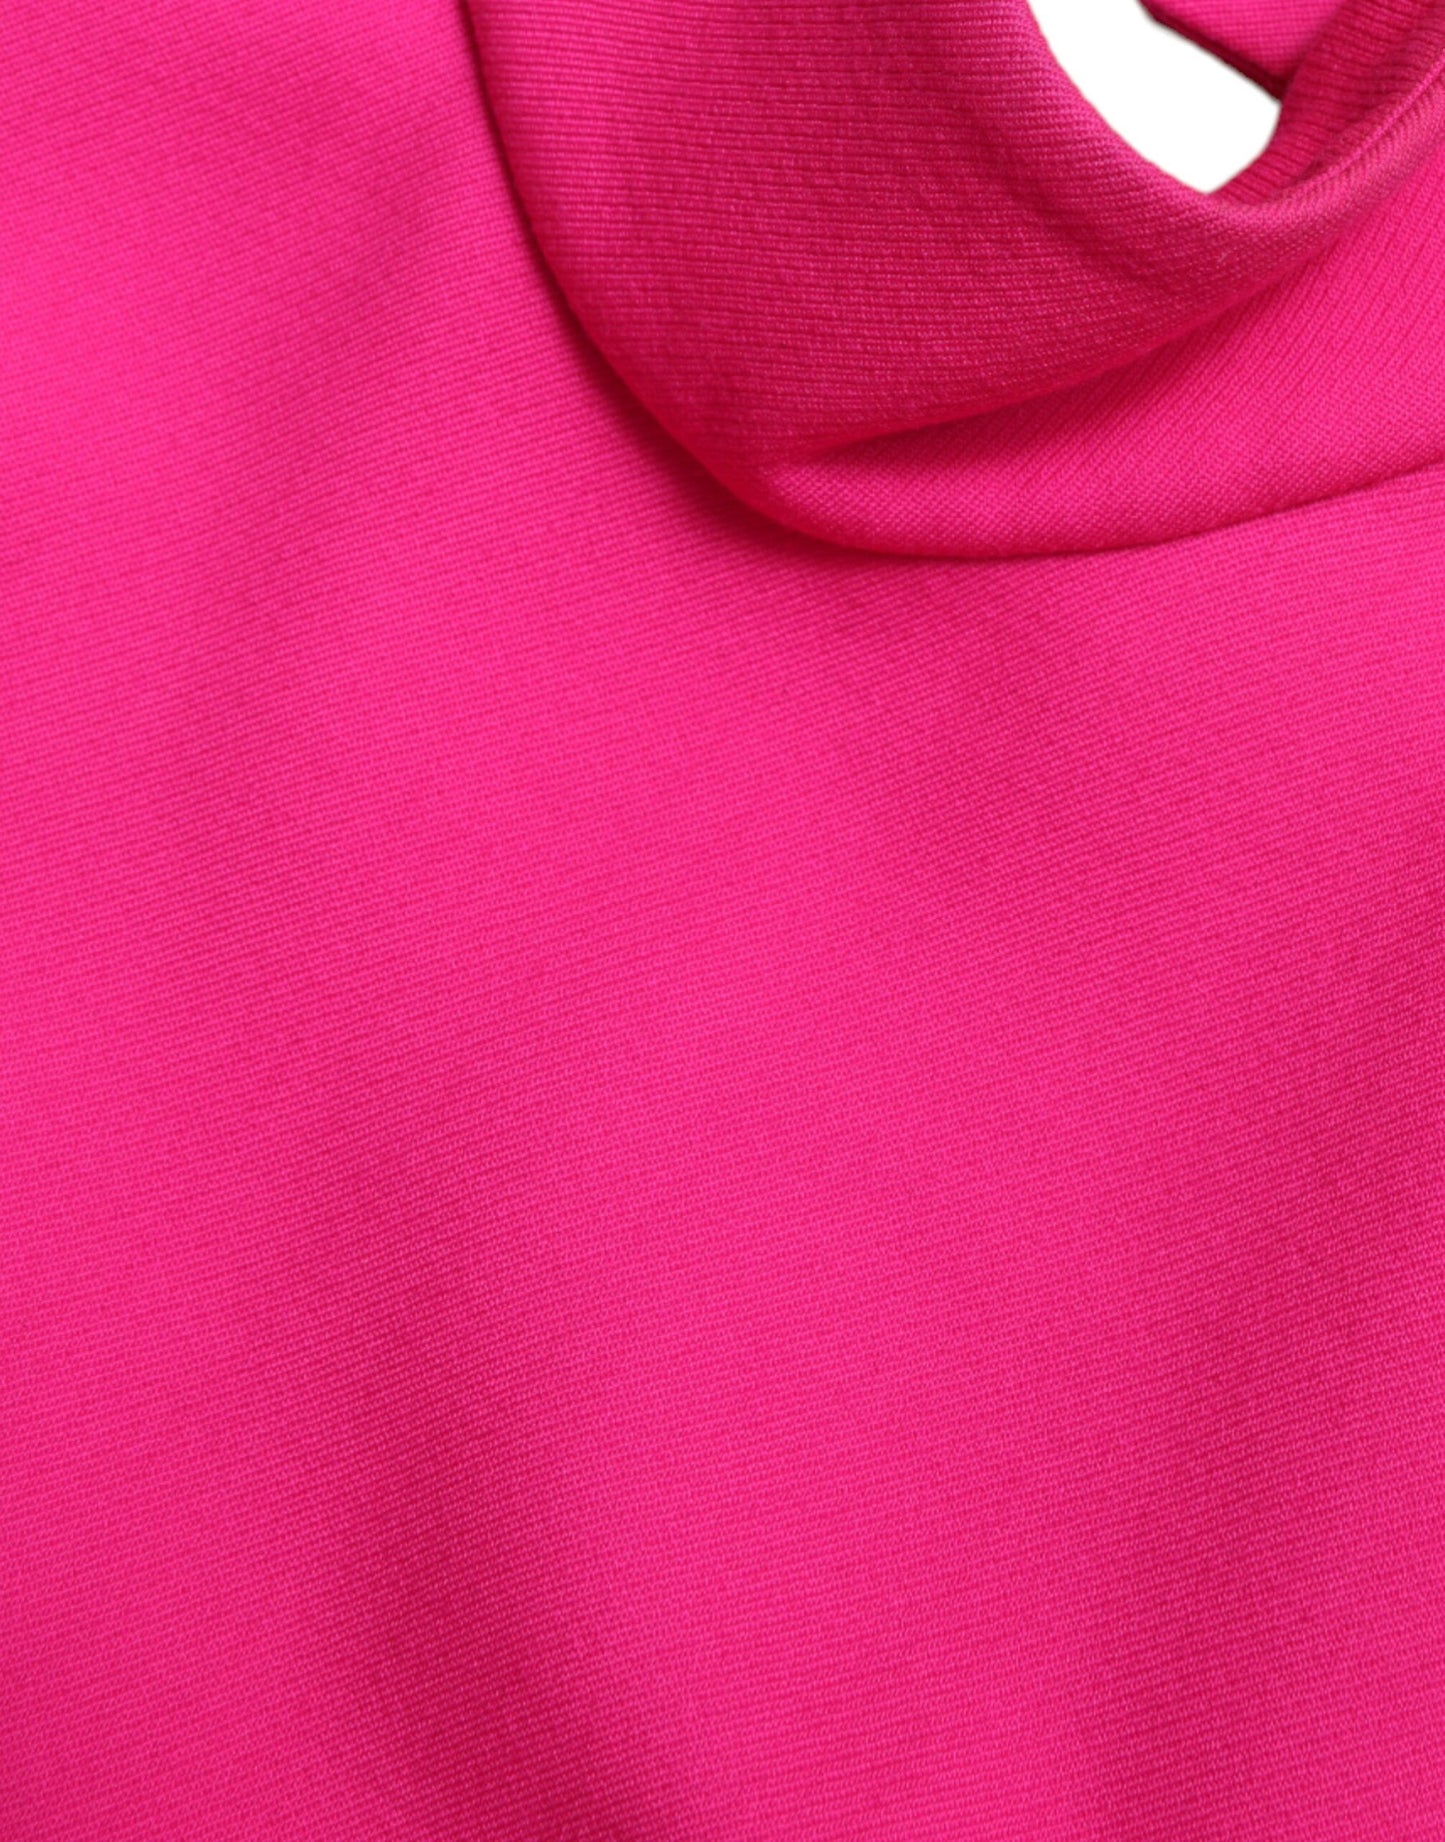 Elegant Pink Turtleneck Sleeveless Wool Top